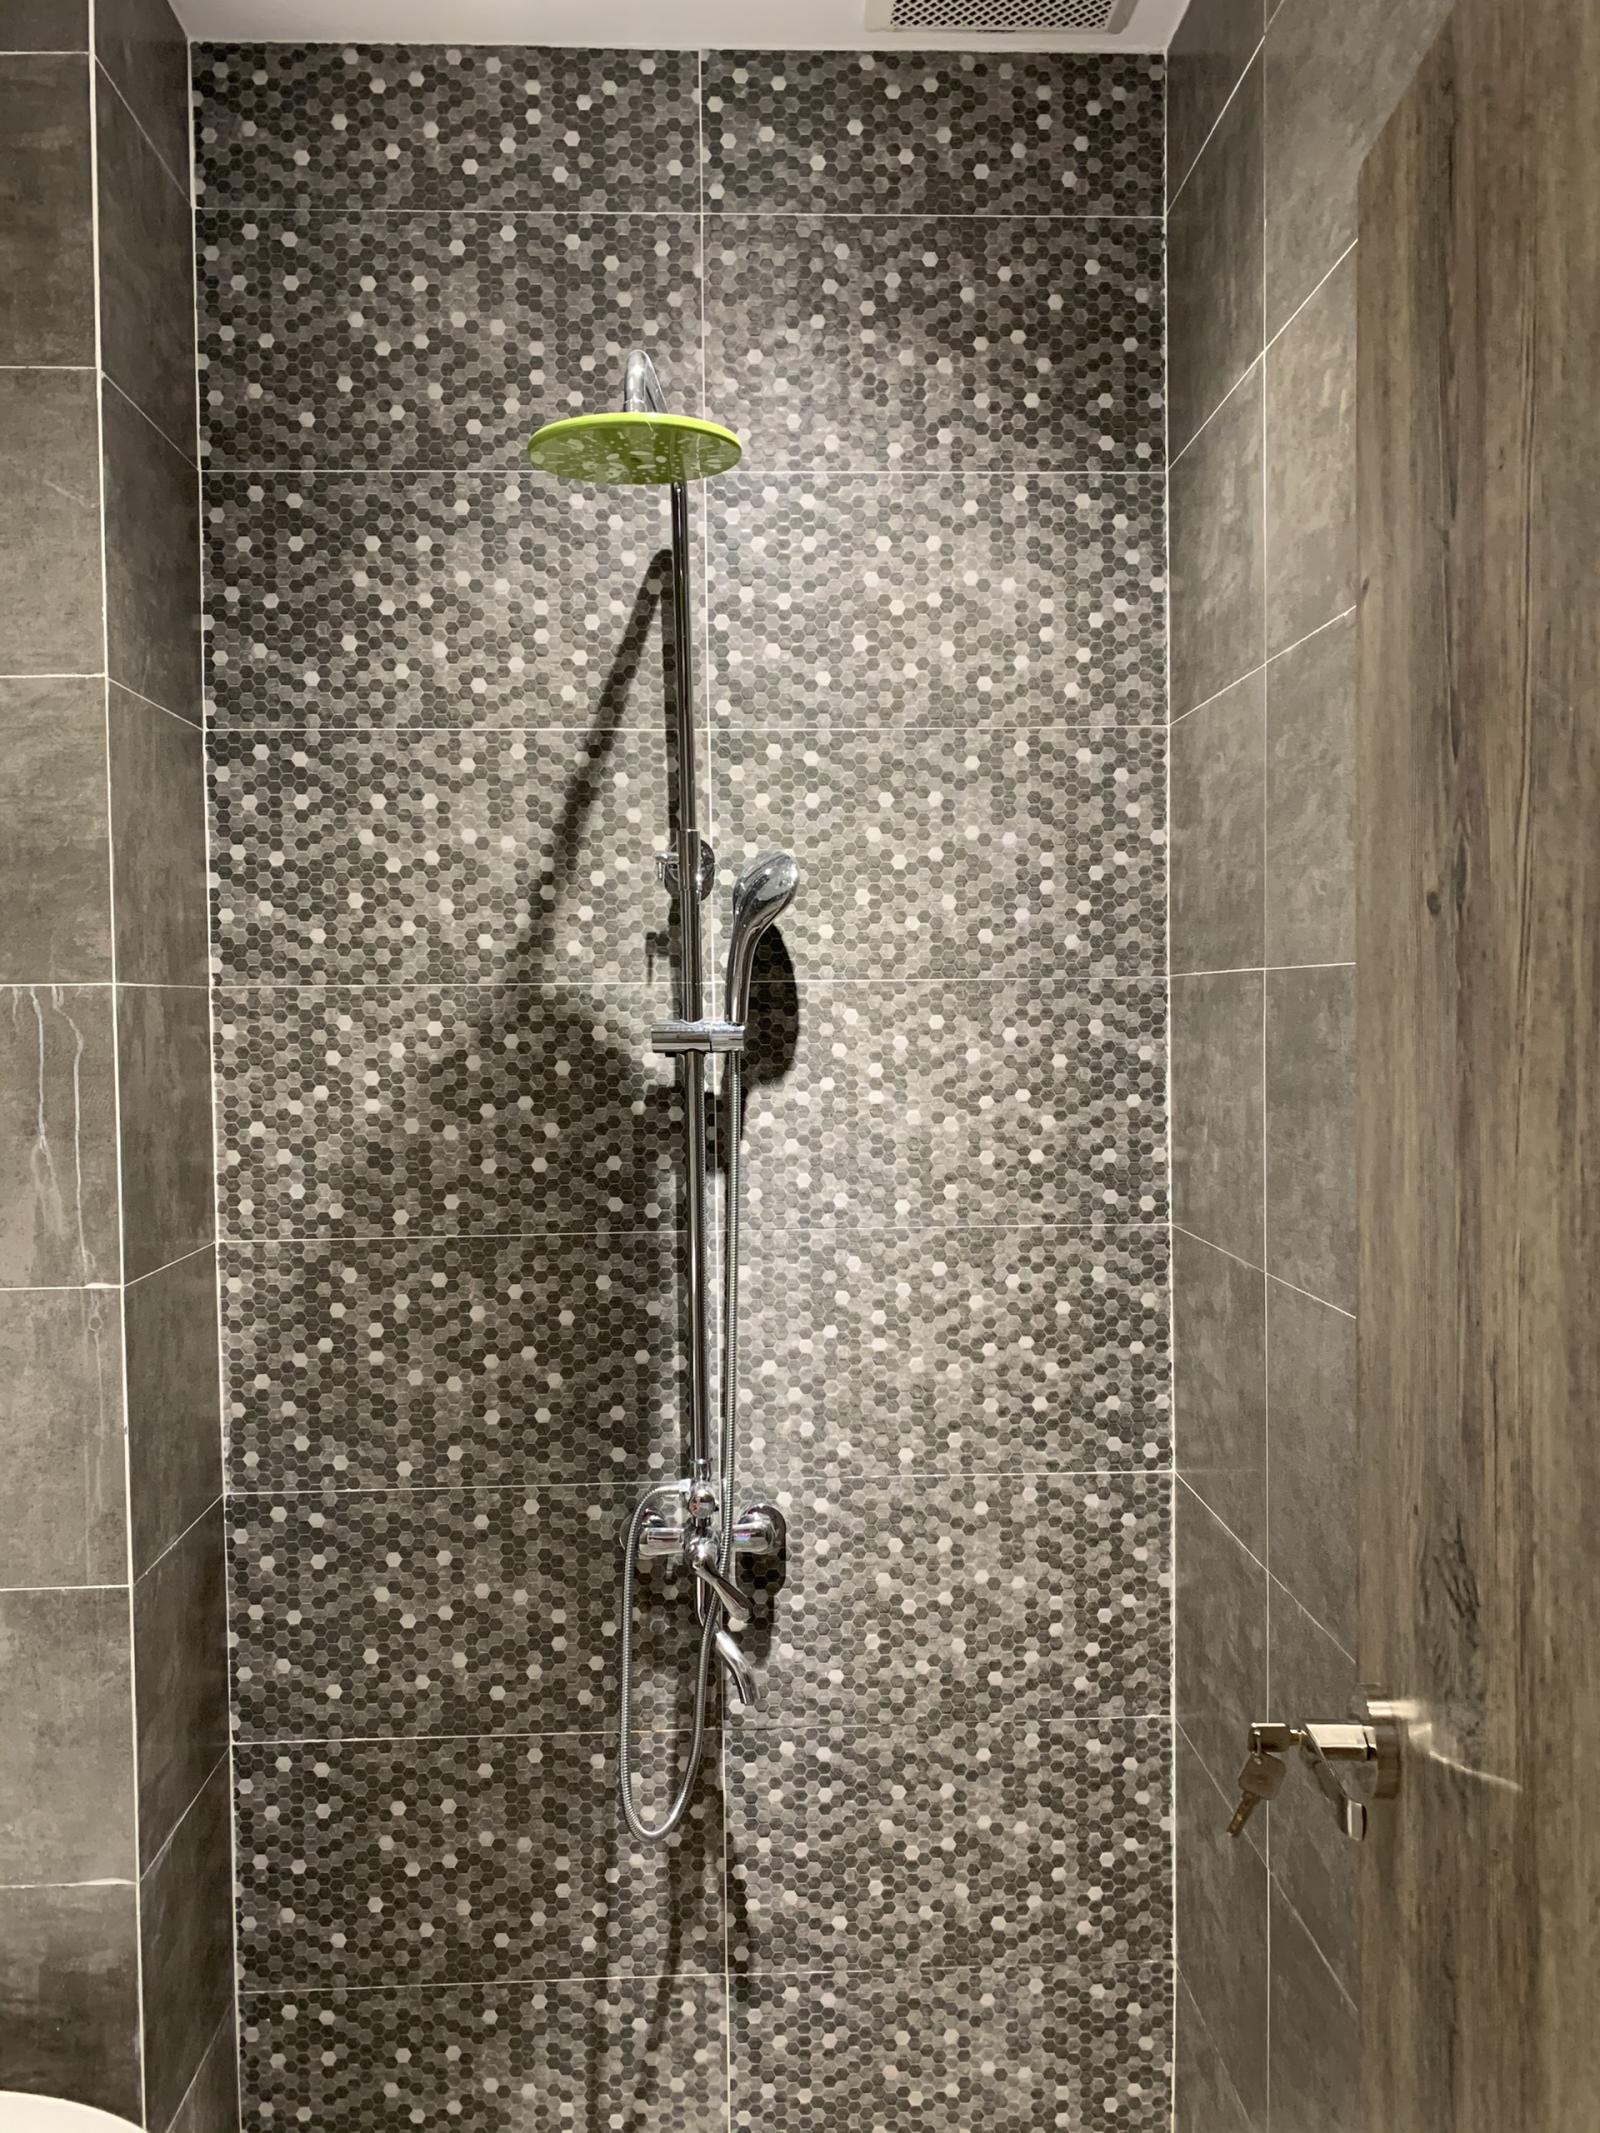 Phòng tắm vẫn toát lên vẻ sang trọng với điểm nhấn là khoảng tường mosaic đá tự nhiên